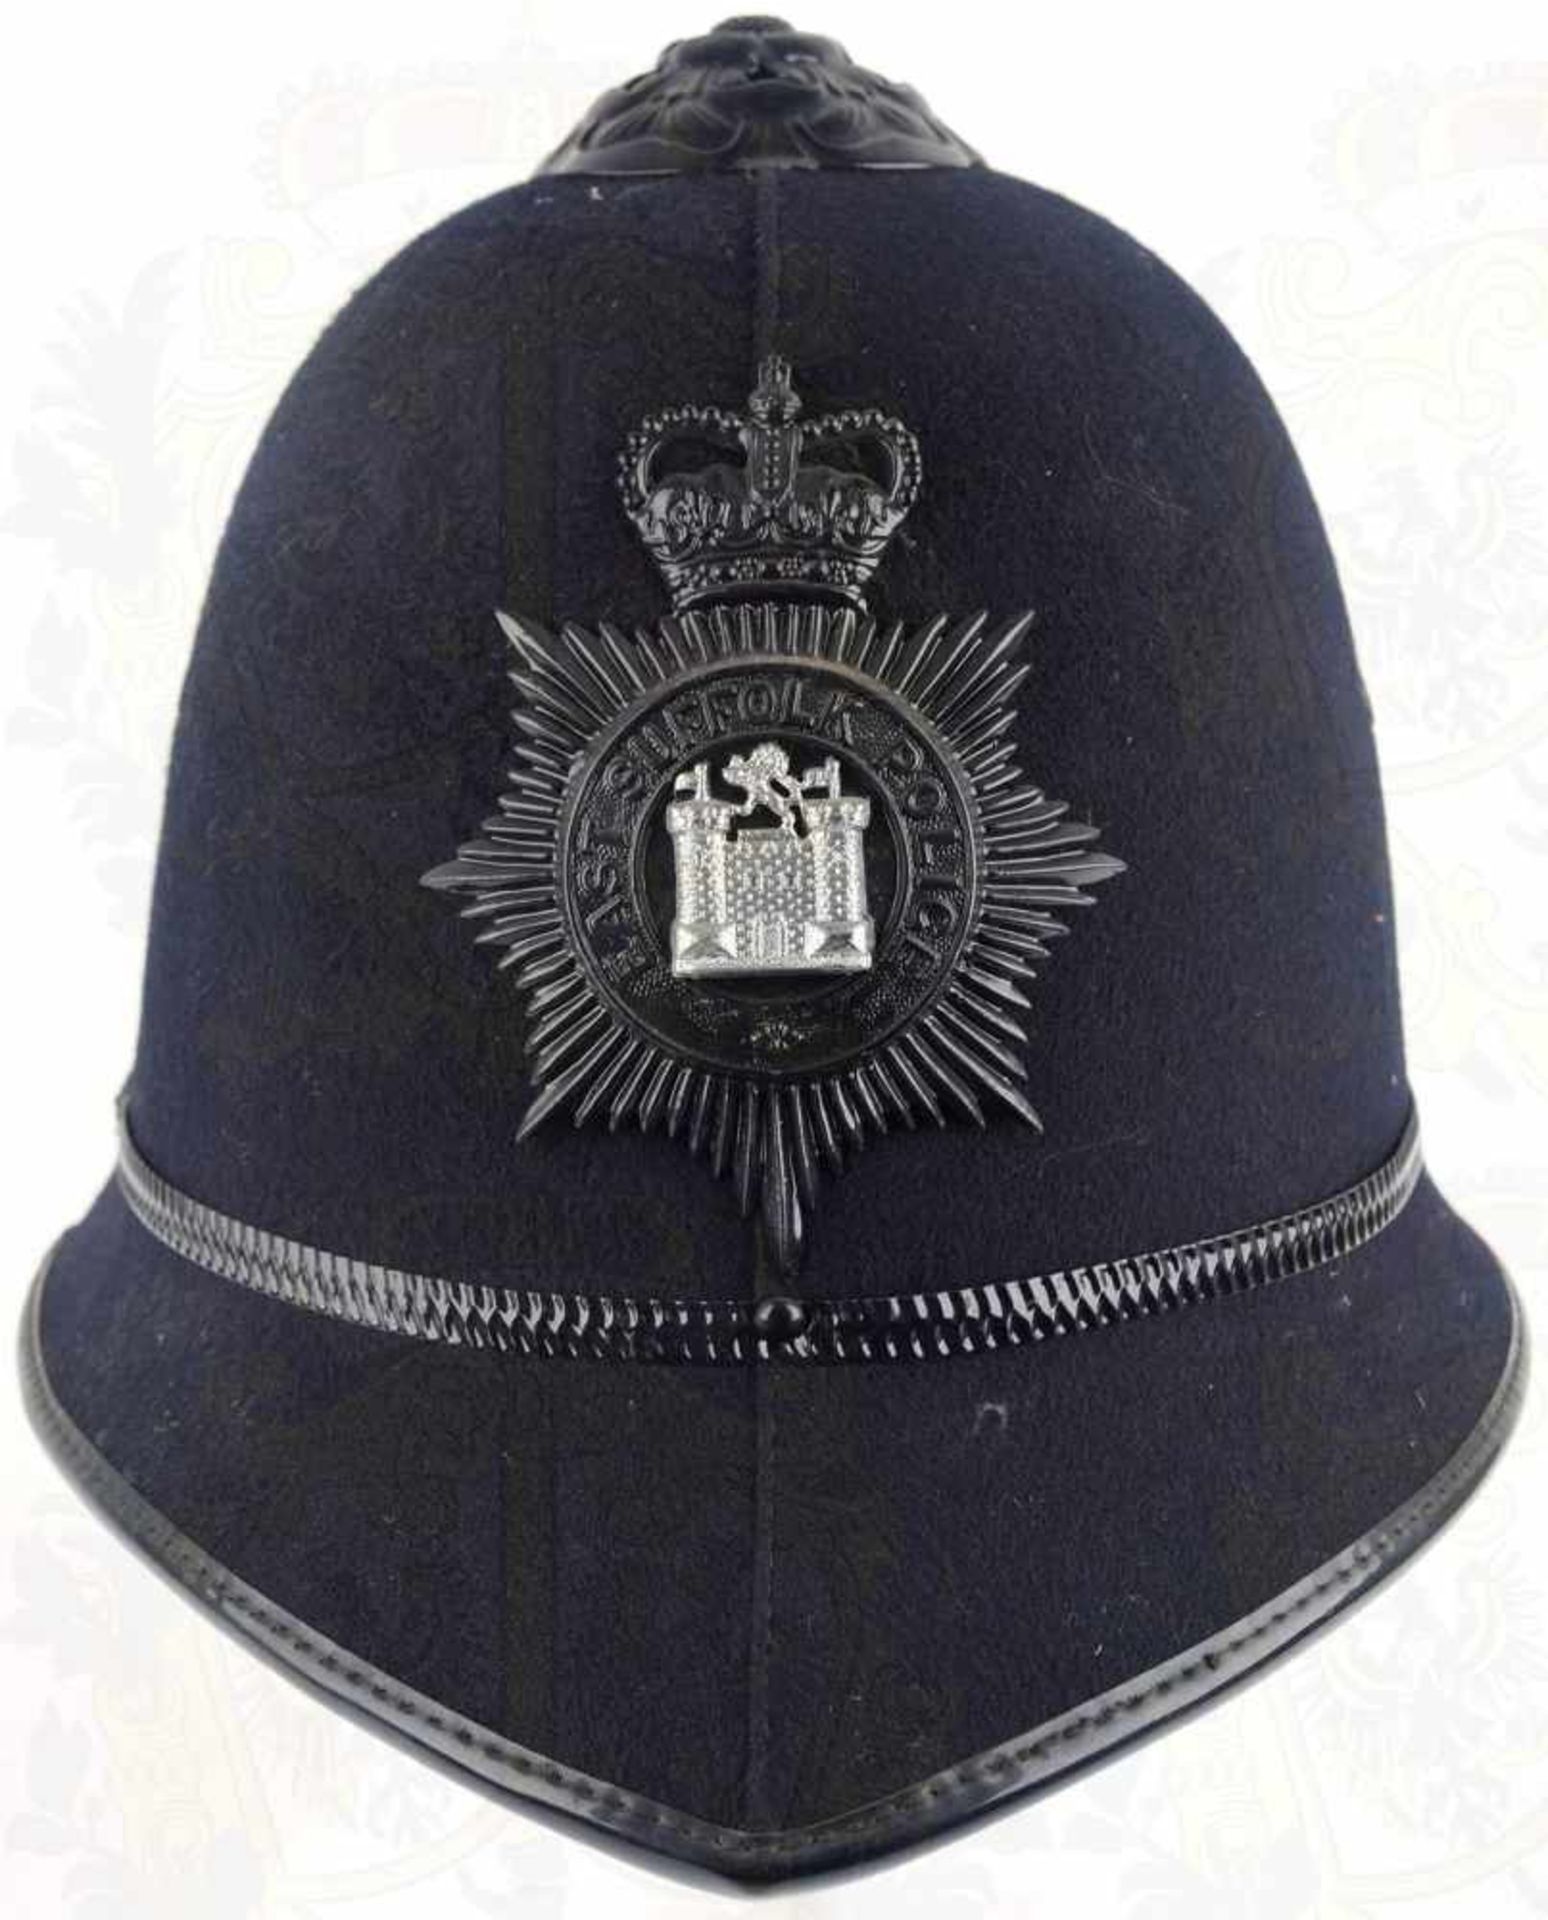 BOBBYHELM EAST SUFFOLK POLICE, Korpus m. schwarzem Tuchbezug, je 2 Lüftungslöcher, schwarzes - Bild 2 aus 2